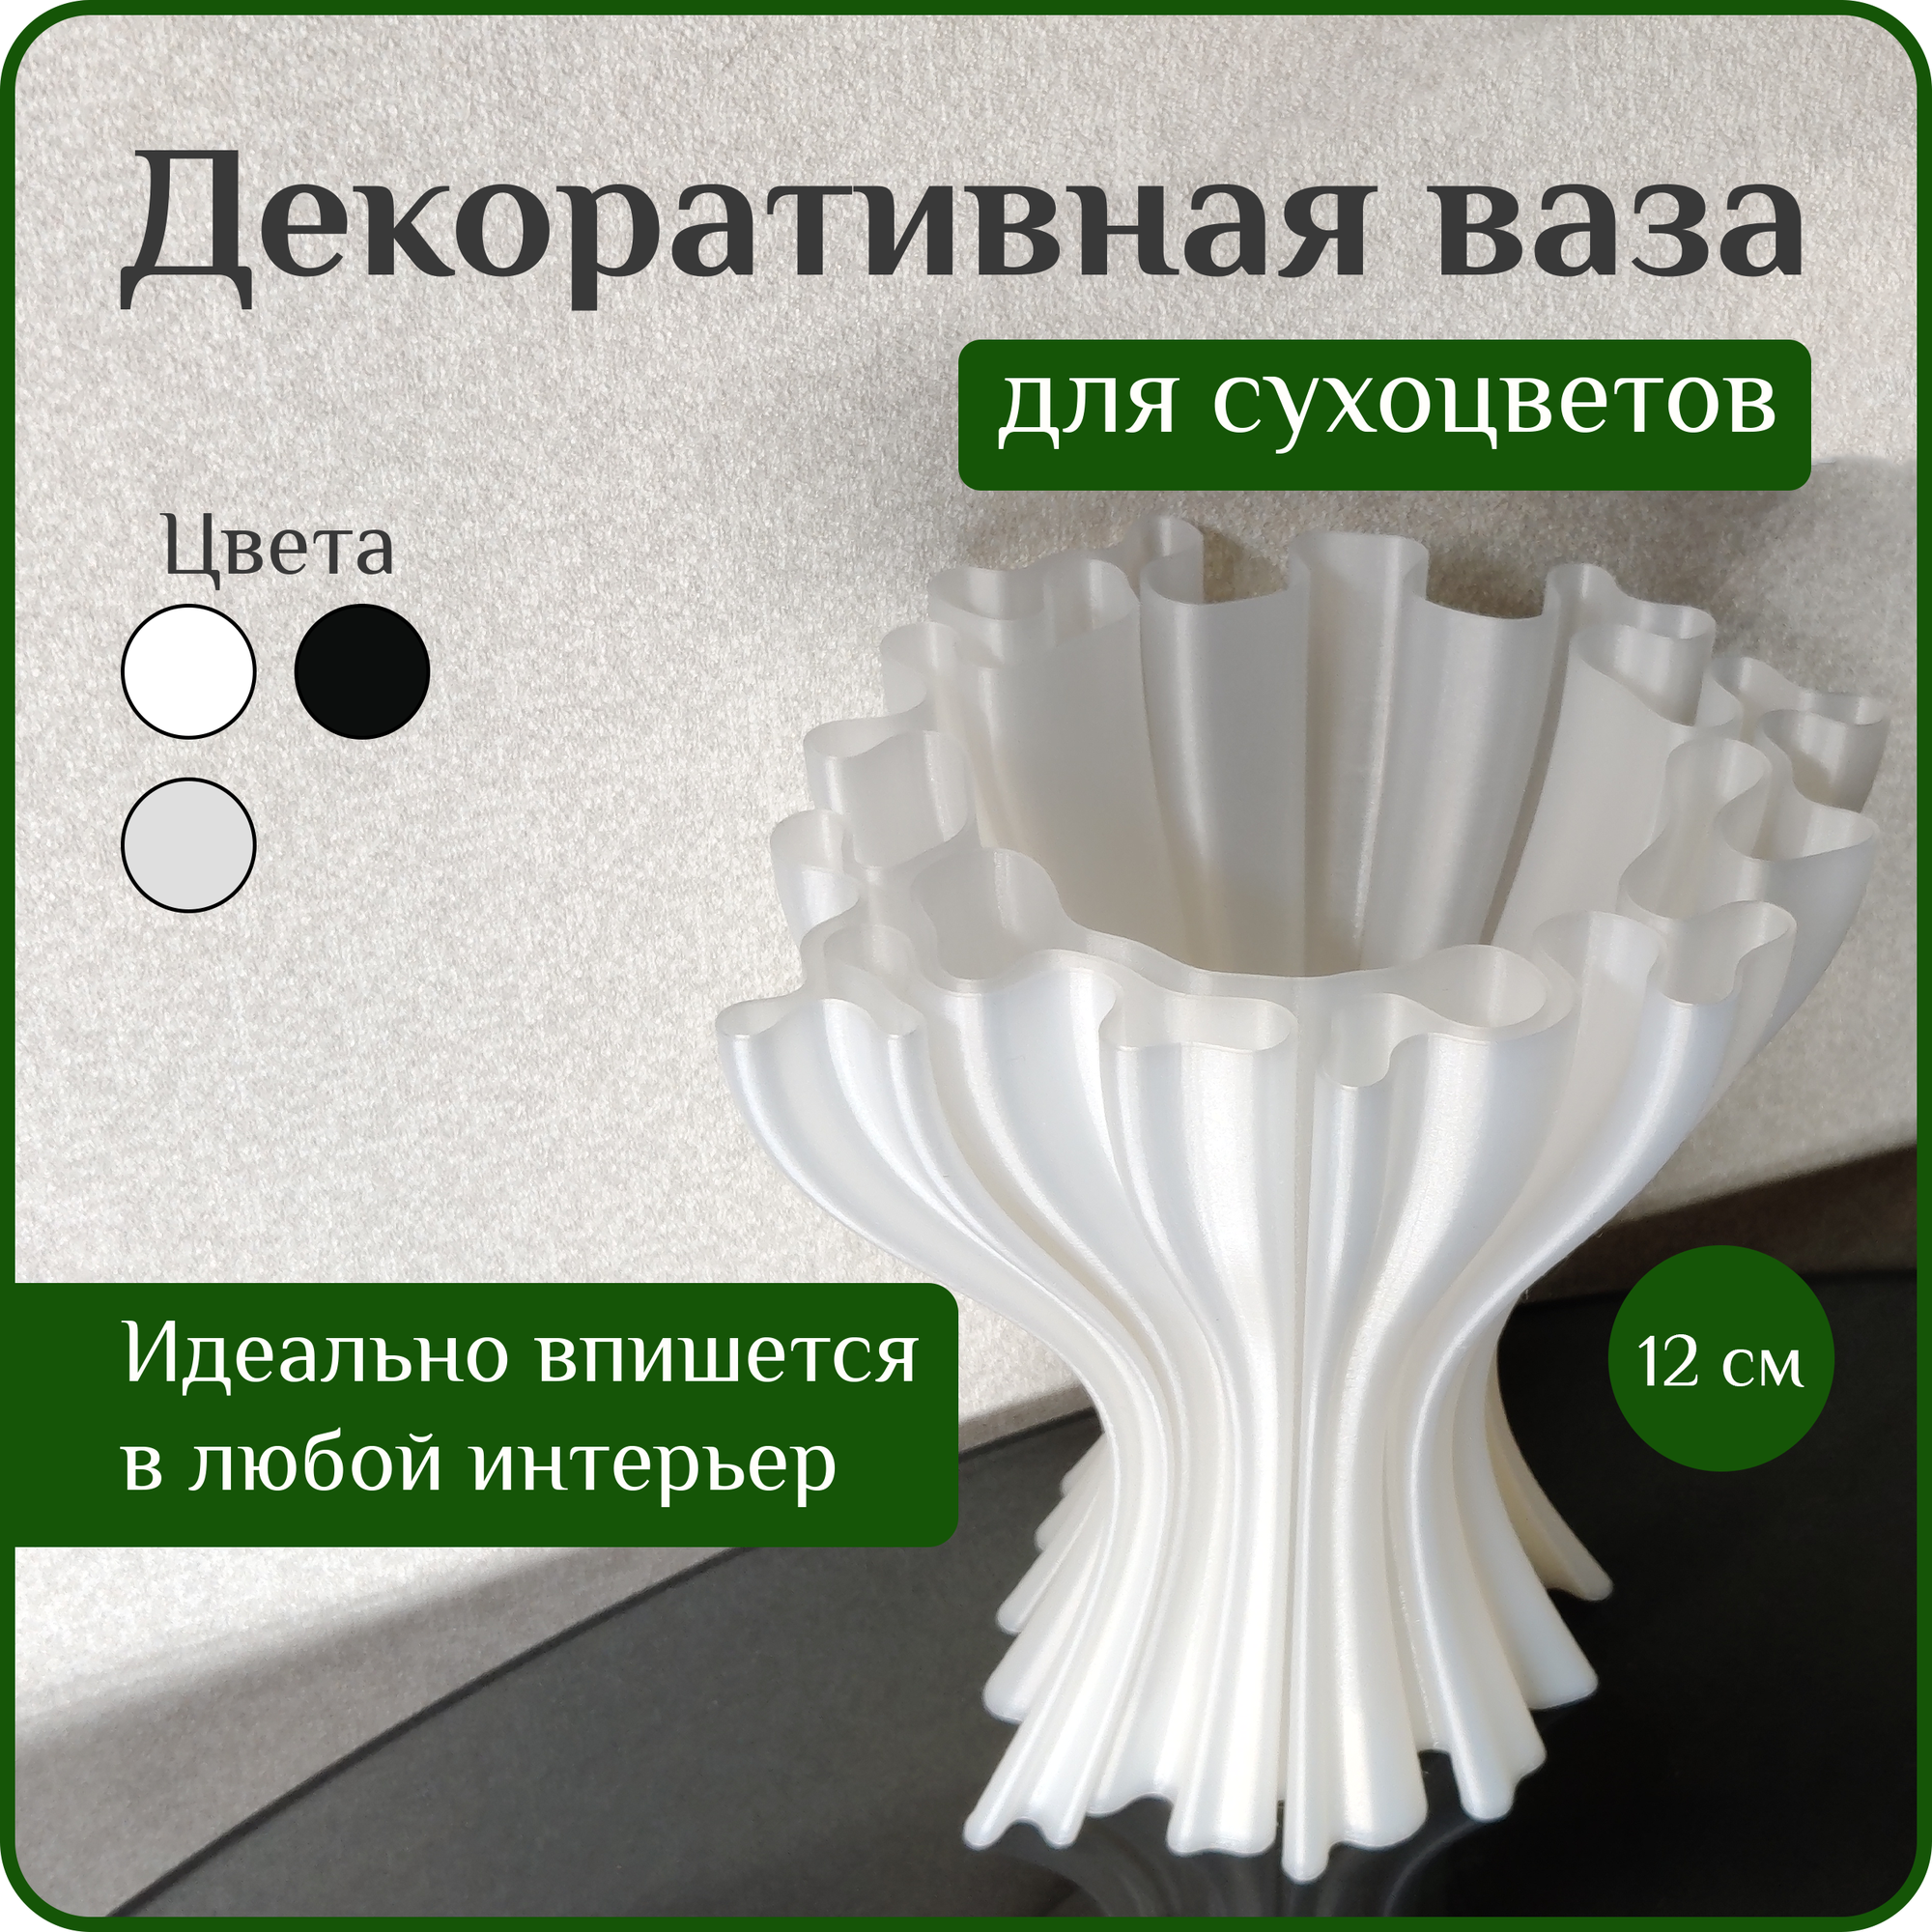 Ваза декоративная интерьерная "Жемчужная", ваза для сухоцветов, ваза для декора, 12 см, пластик